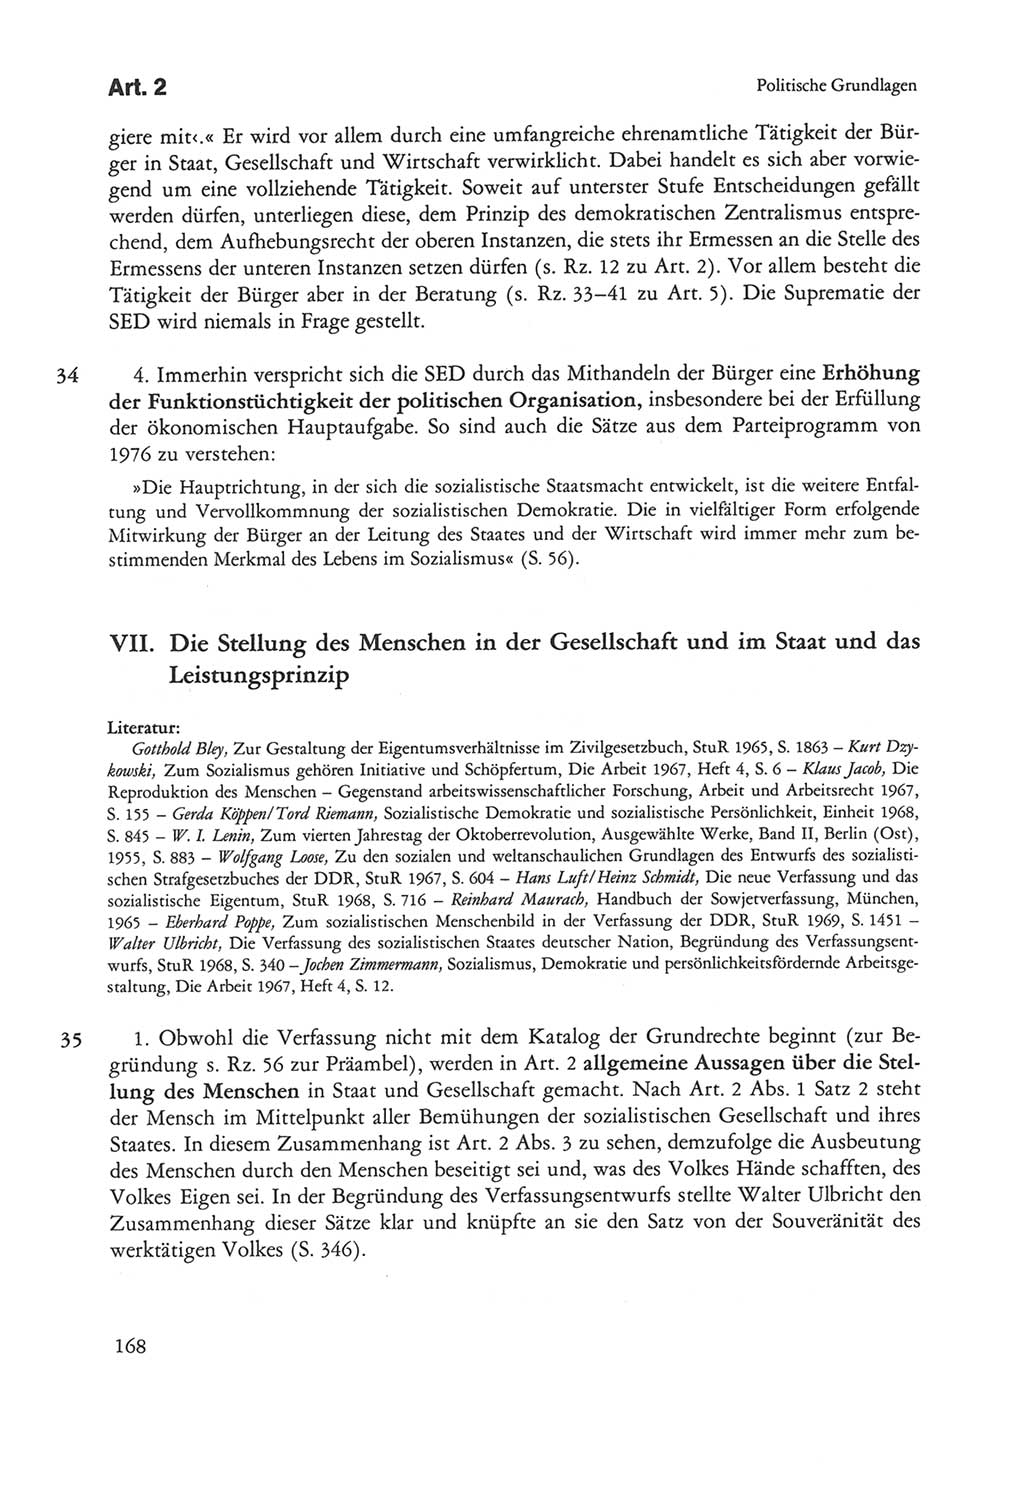 Die sozialistische Verfassung der Deutschen Demokratischen Republik (DDR), Kommentar 1982, Seite 168 (Soz. Verf. DDR Komm. 1982, S. 168)